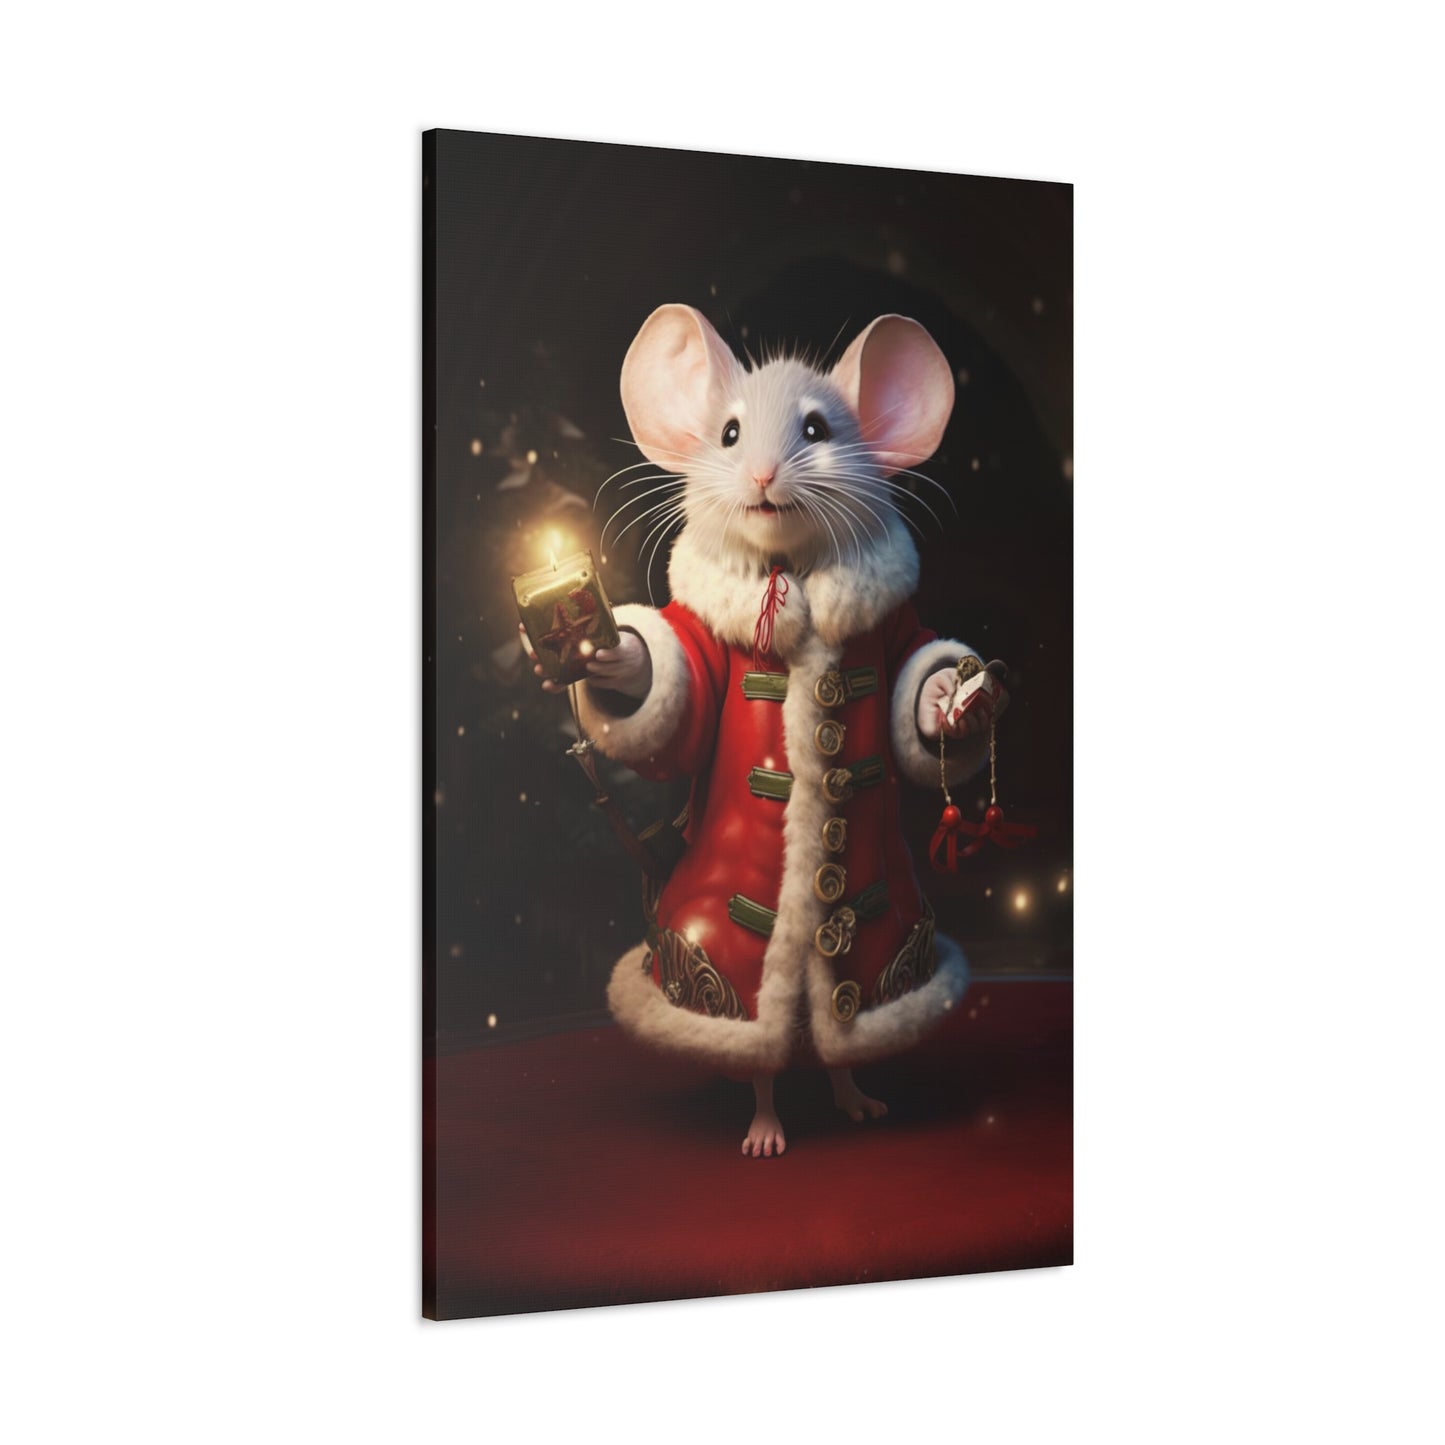 Christmas mouse art prints